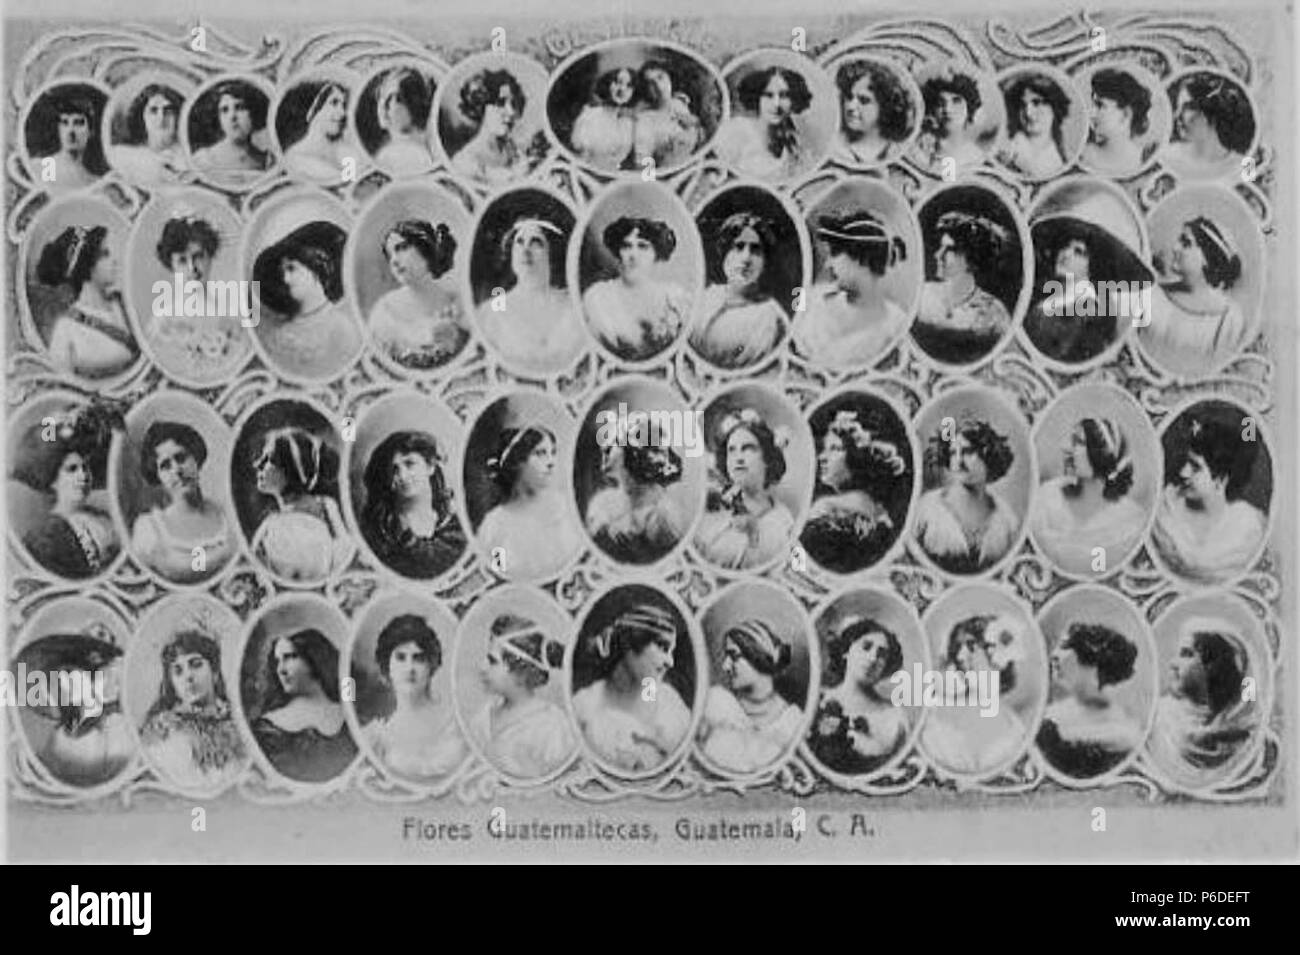 Español: Composición fotográfica de 1900 con los rostros de jóvenes guatemaltecas. 1900 43 Floresdeguatemala1900 Stock Photo